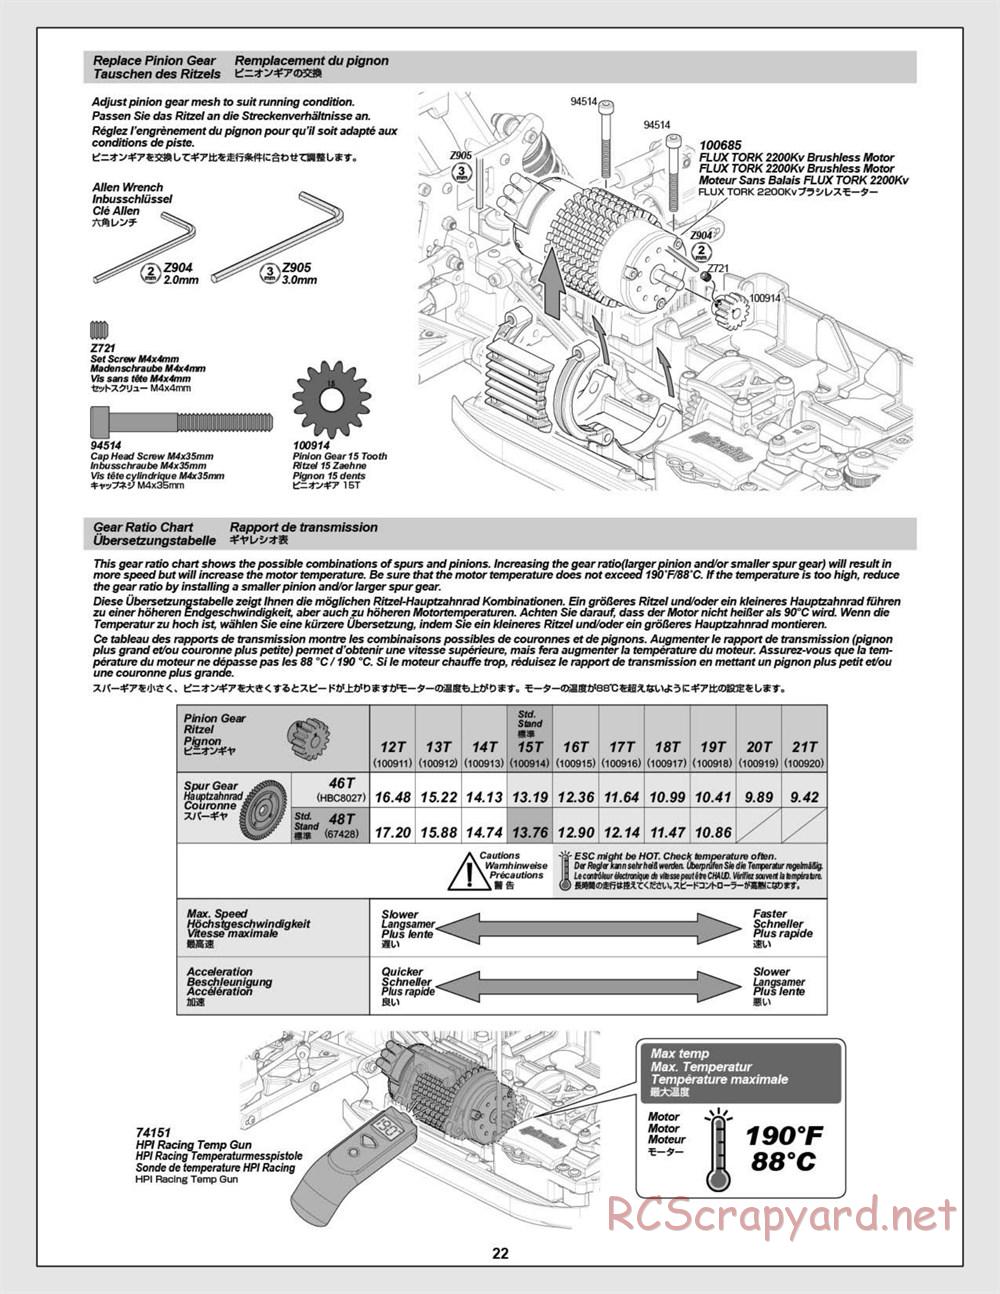 HPI - Vorza Flux HP - Manual - Page 22